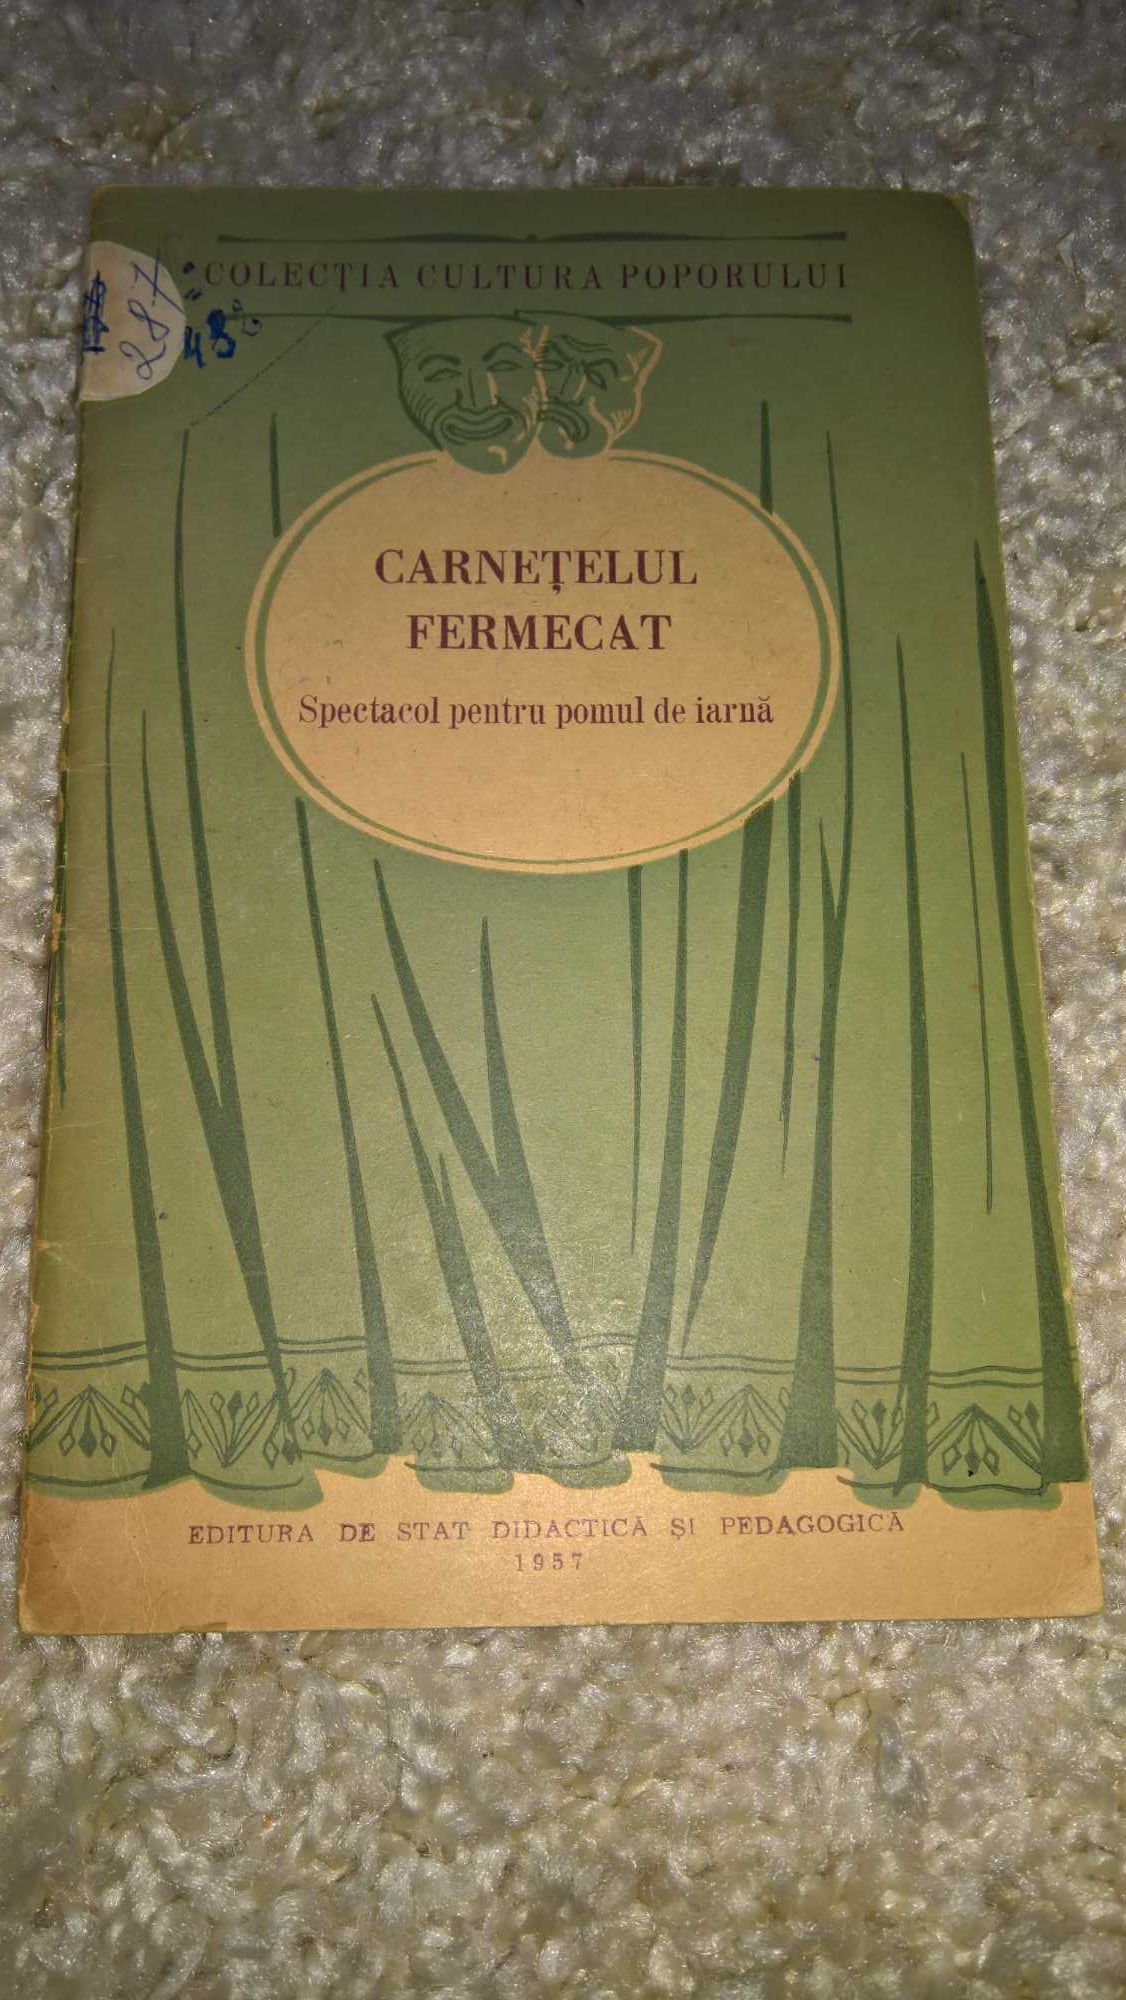 Carnetelul fermecat - Piesa de teatru 1957